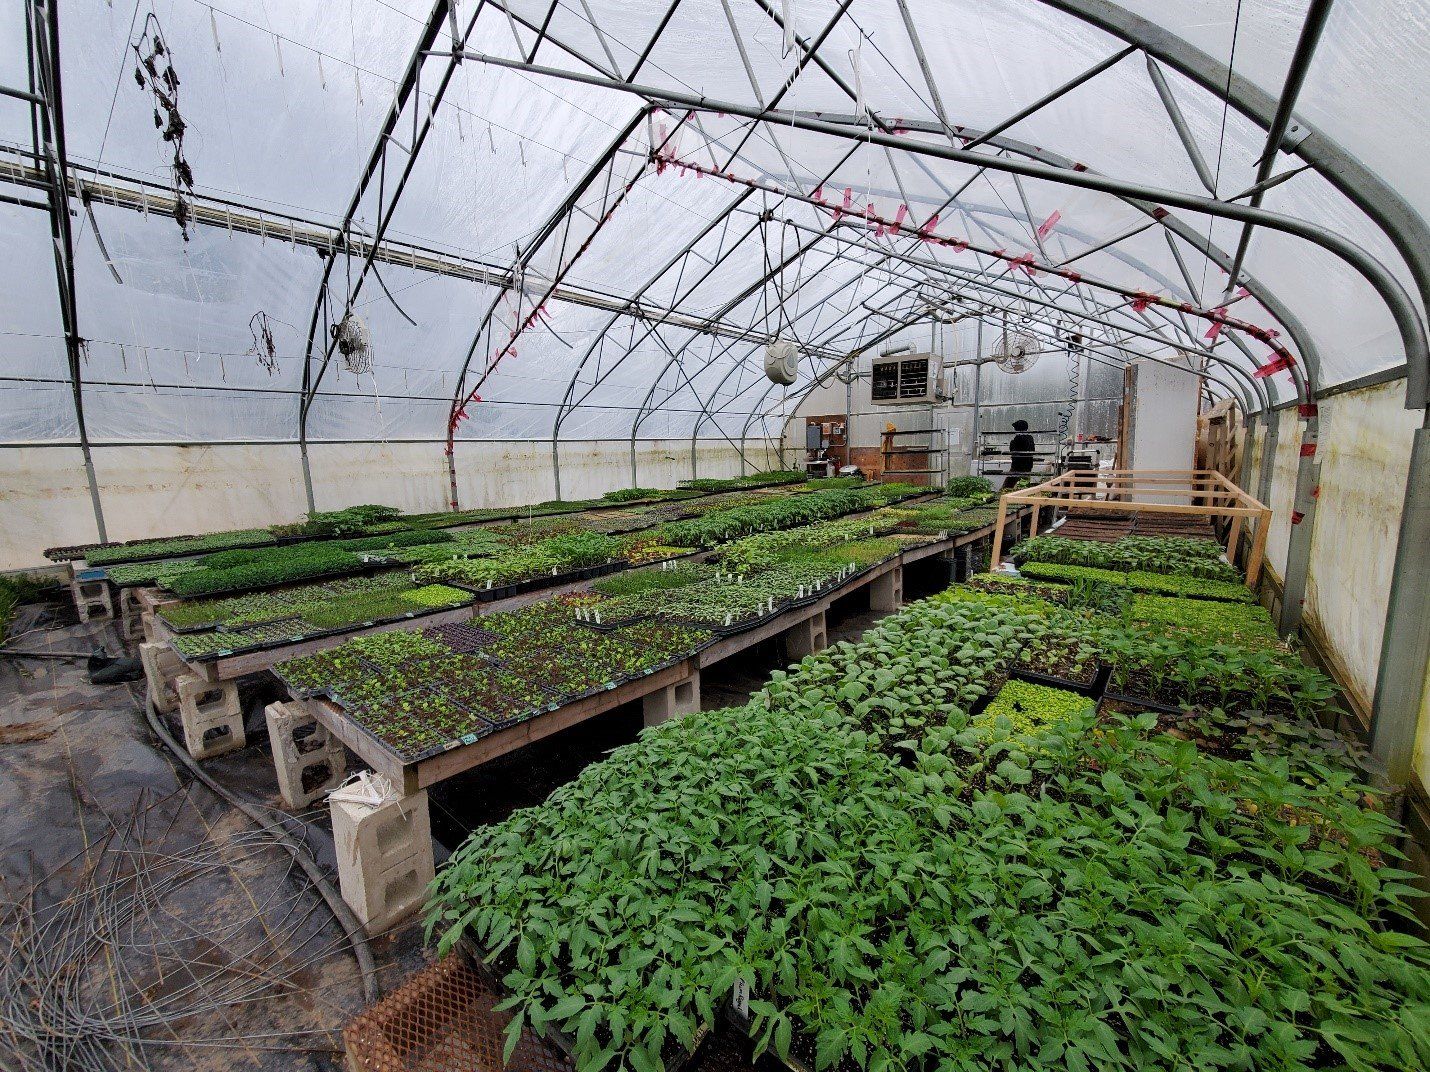 Next Happening: Lettuce Rejoice! May 6, 2021 - Seedling Sales Primer